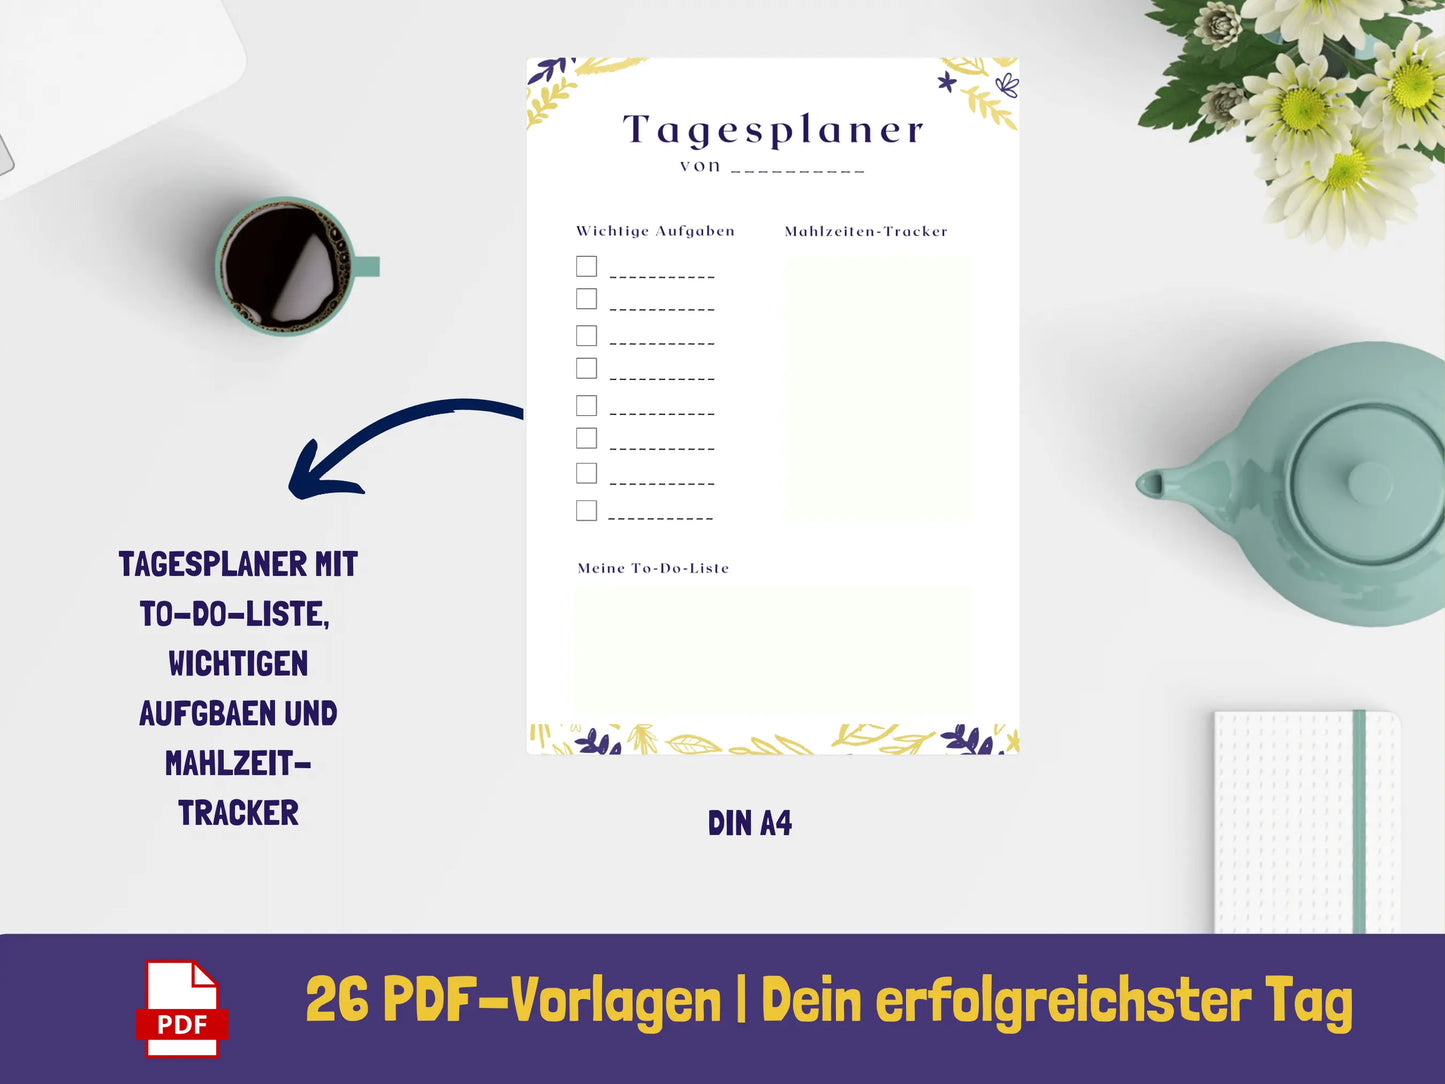 Tagesplaner: Dein erfolgreichster Tag - Variante Blätter {26 Seiten} PDF AndreasJansen Vorlage